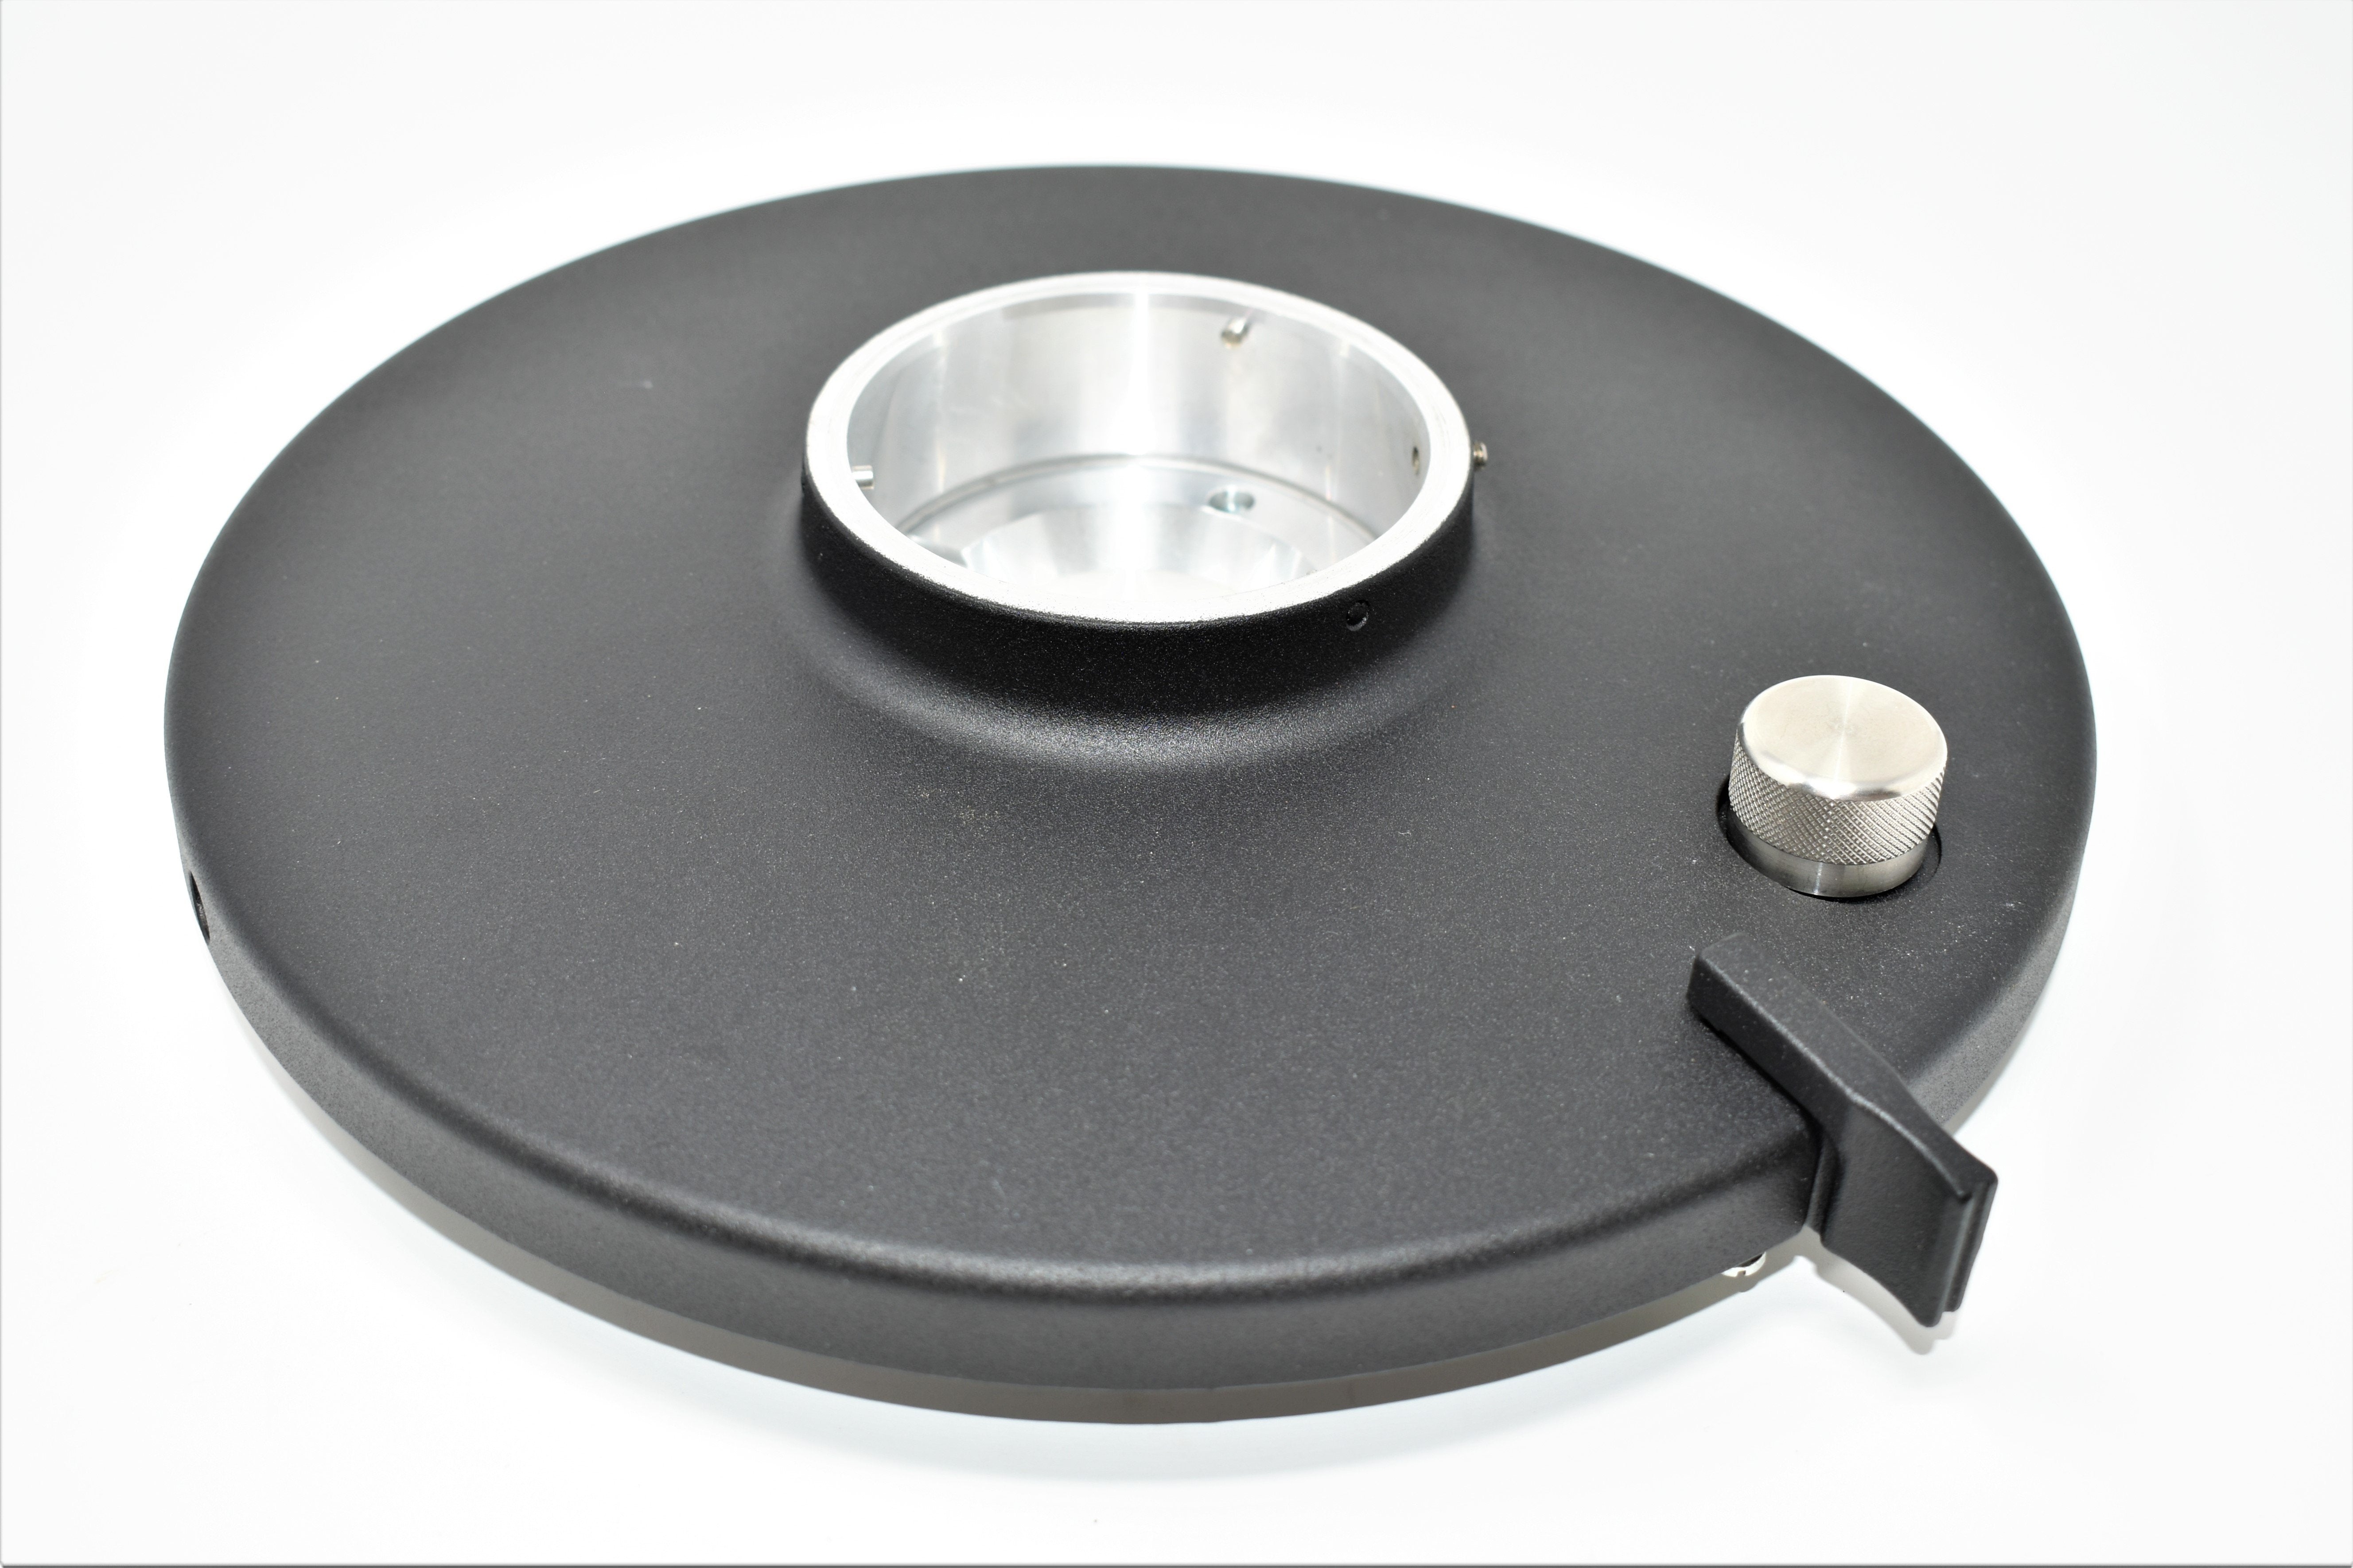 PEAK Grinder lid and grind adjustment assembly